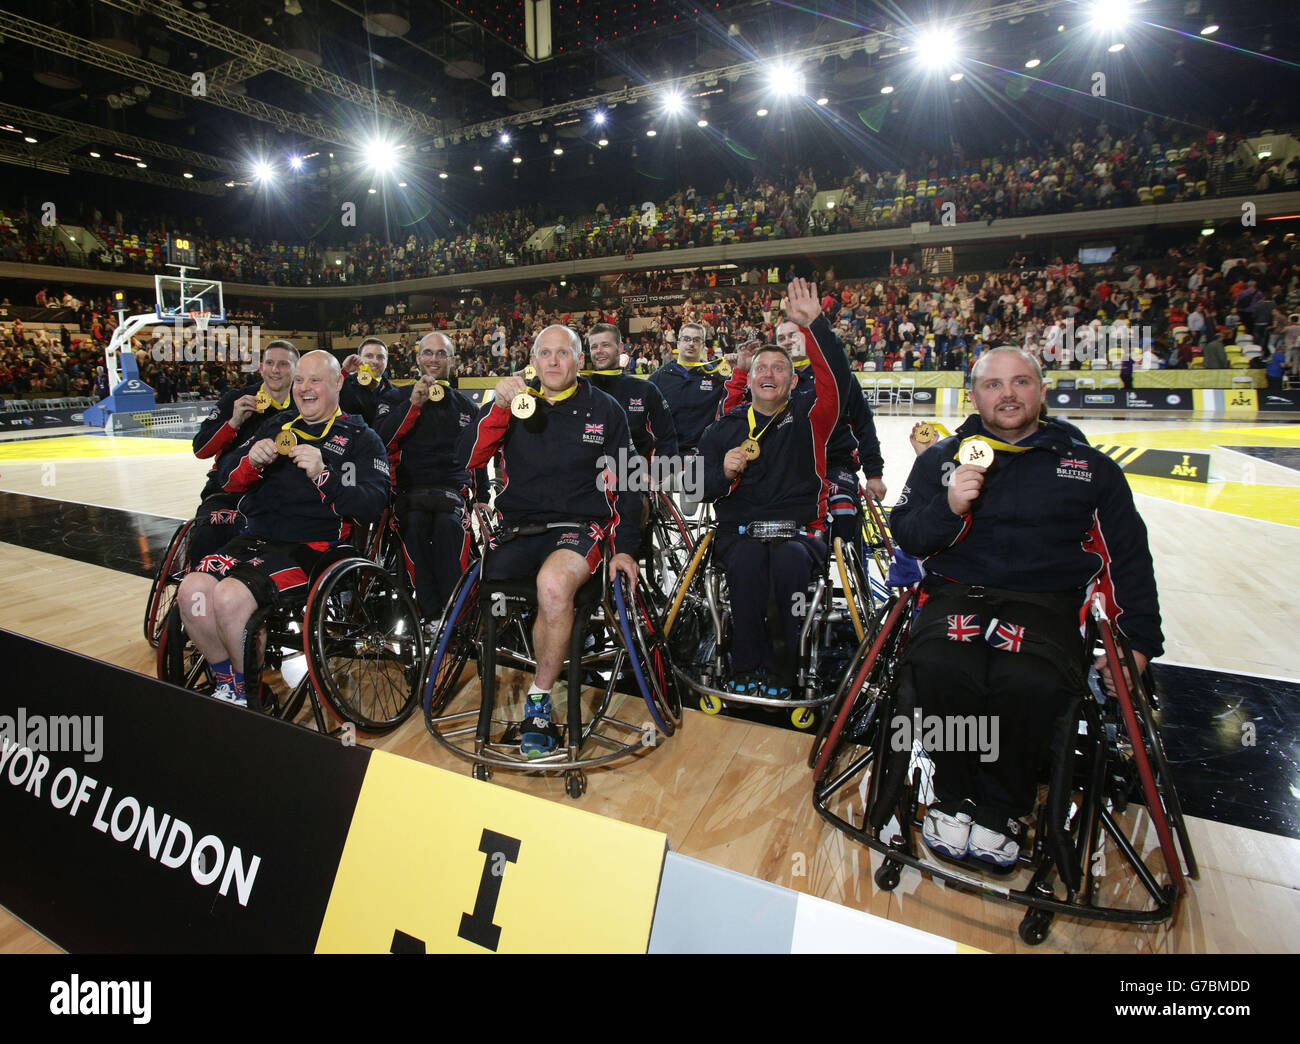 Das britische Team feiert seine Goldmedaillen, nachdem es die USA im Rollstuhl-Basketballspiel in der Copper Box Arena, im Queen Elizabeth Olympic Park, London, am vierten Tag des Invictus Games Leichtathletik-Wettbewerbs besiegt hat. Stockfoto